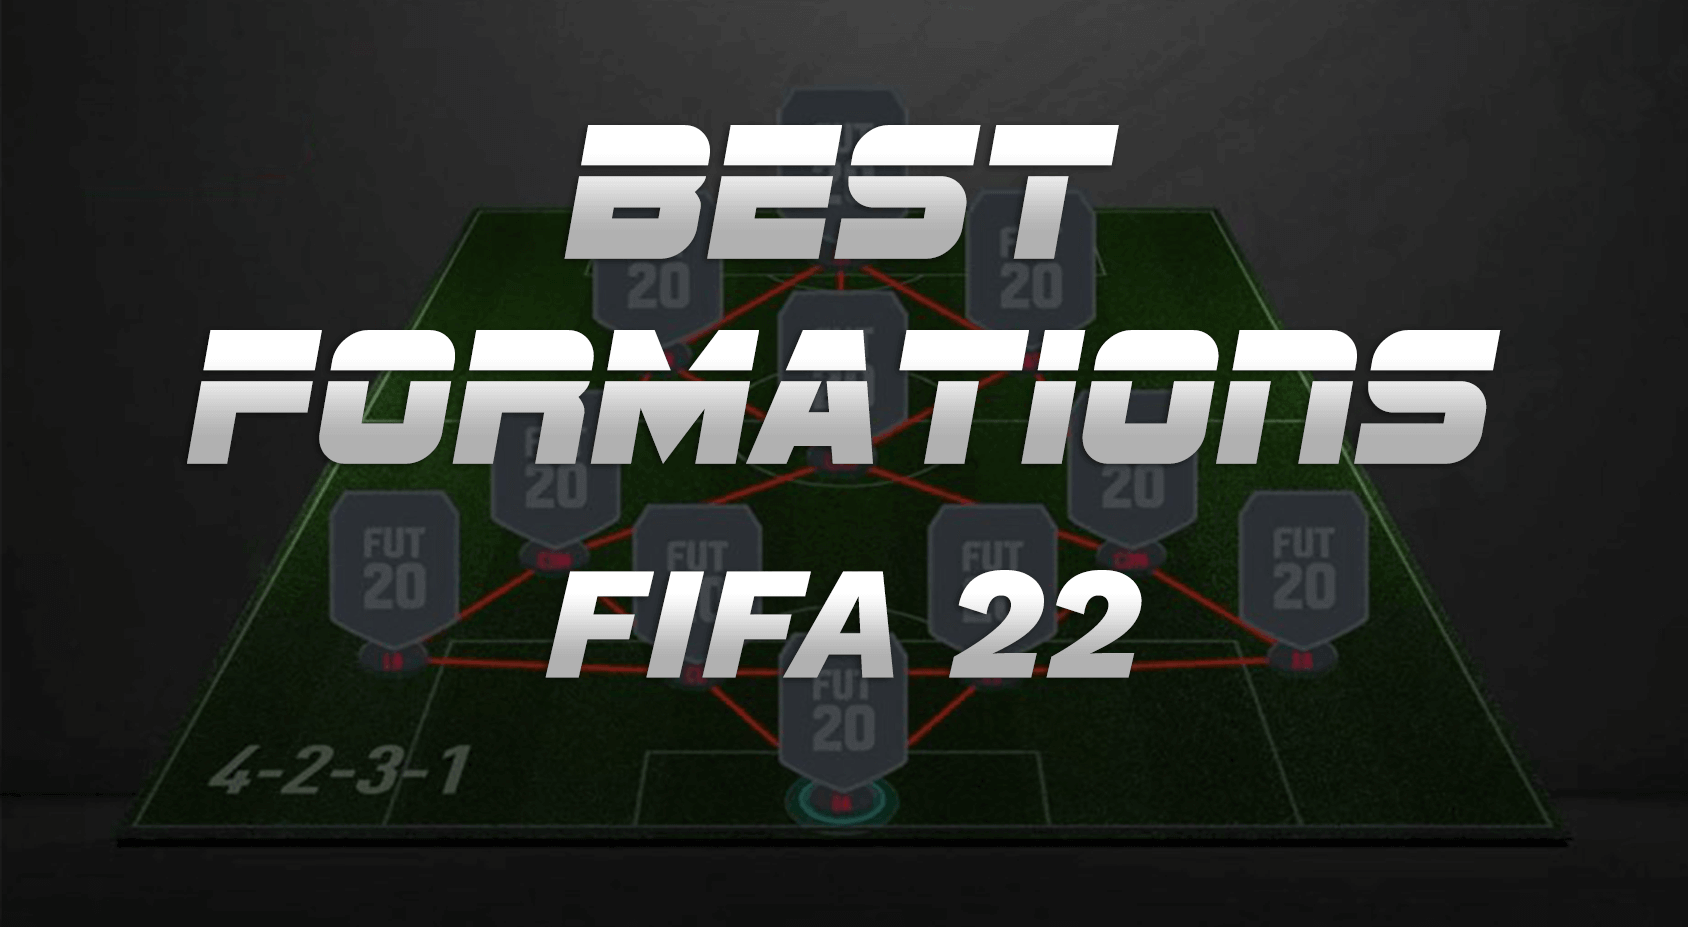 FIFA 23: Melhores formações para jogar